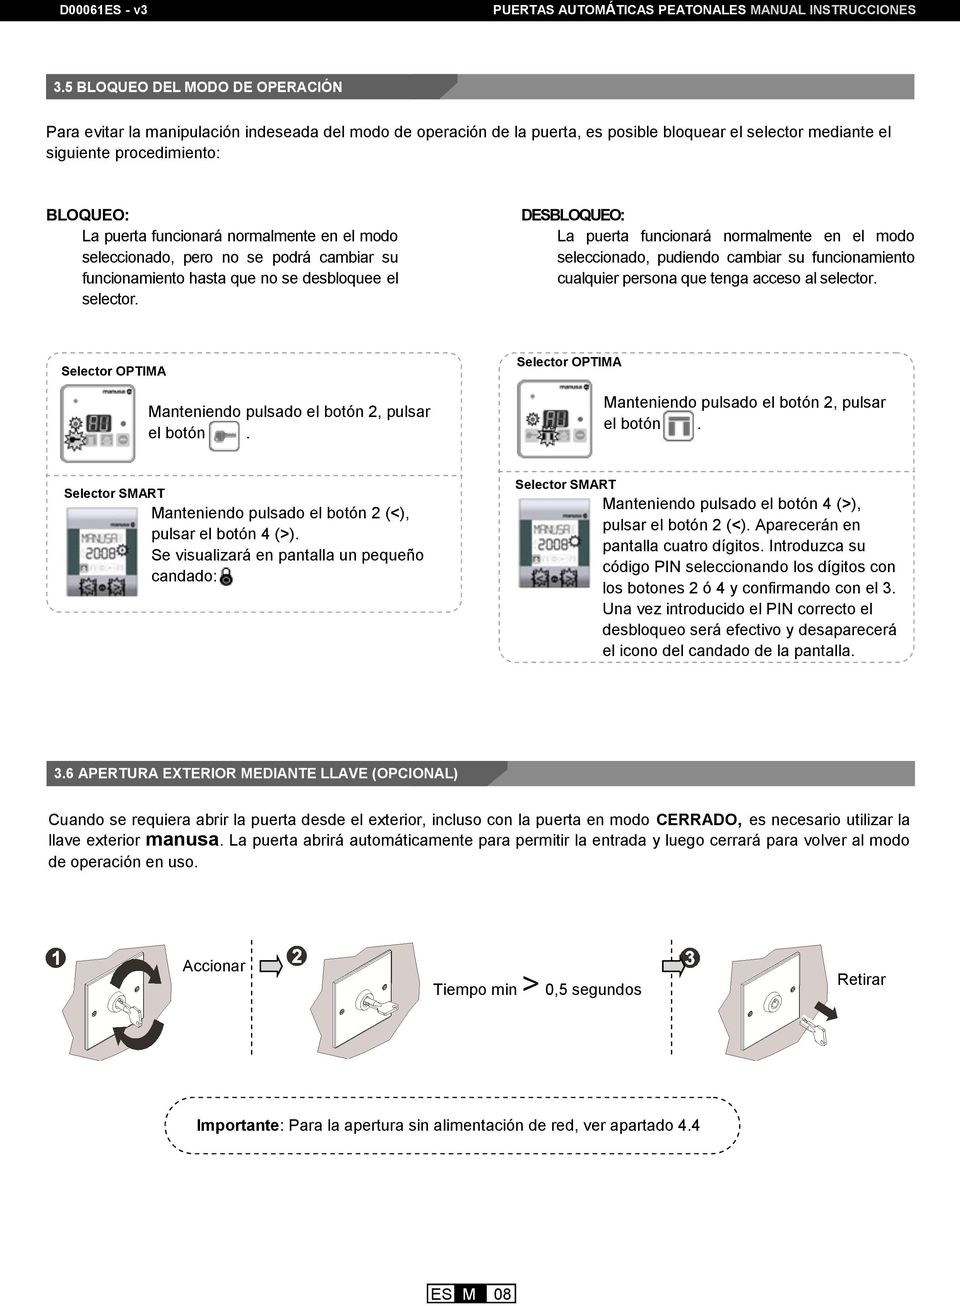 Manual De Instrucciones Puertas Automaticas Peatonales Correderas Pdf Free Download